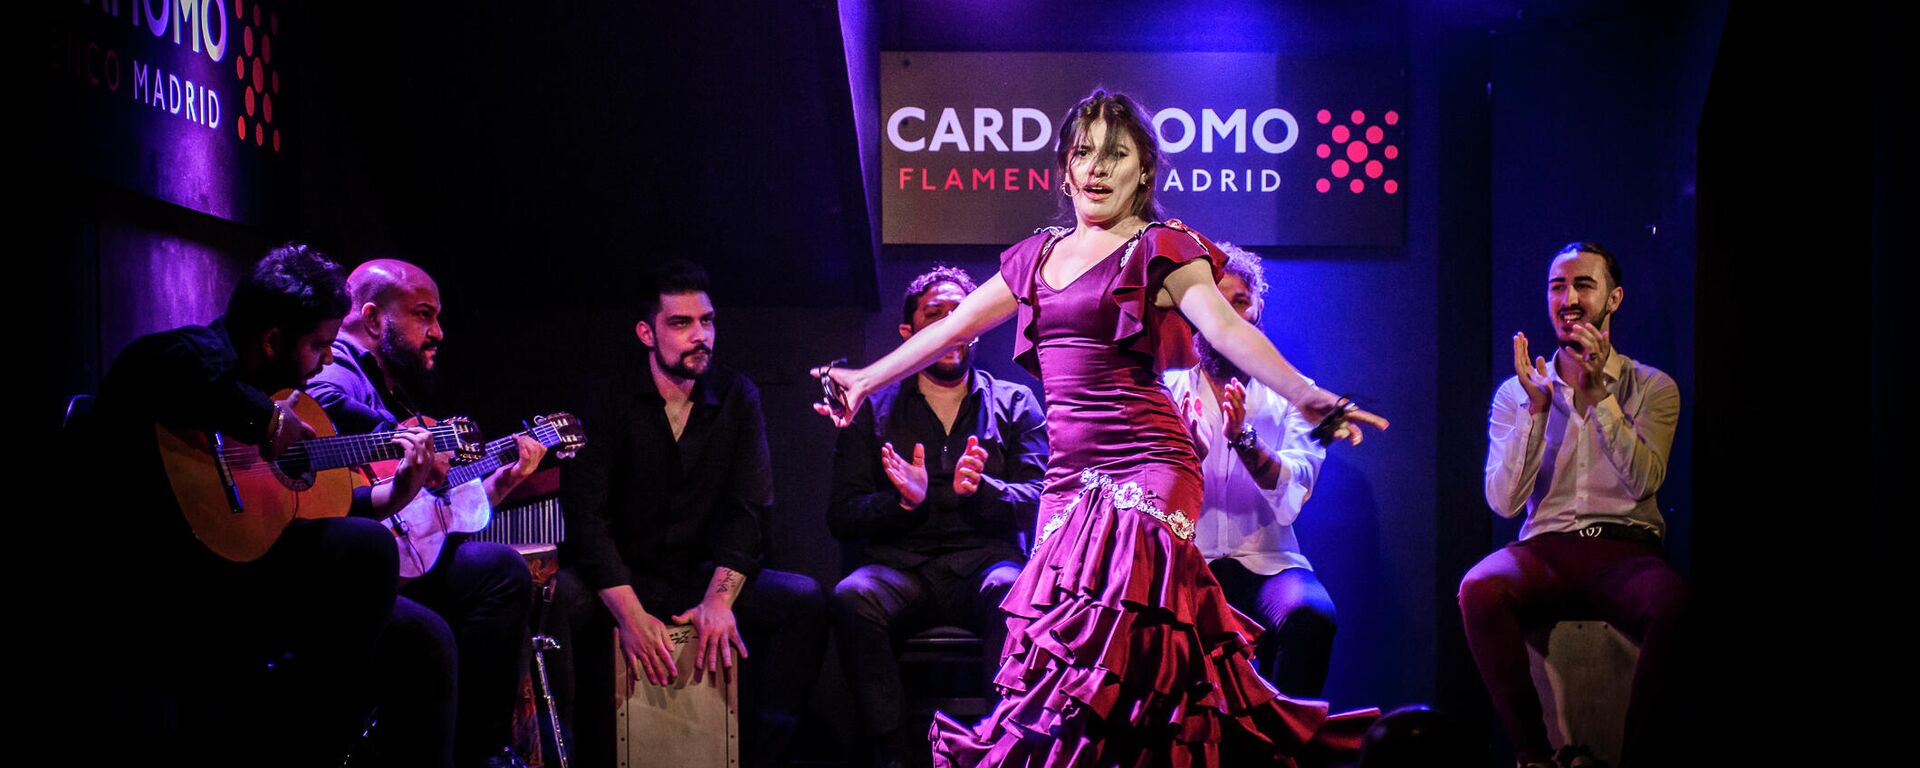 Actuación flamenca en el tablao Cardamomo, en el centro de Madrid - Sputnik Mundo, 1920, 06.06.2021